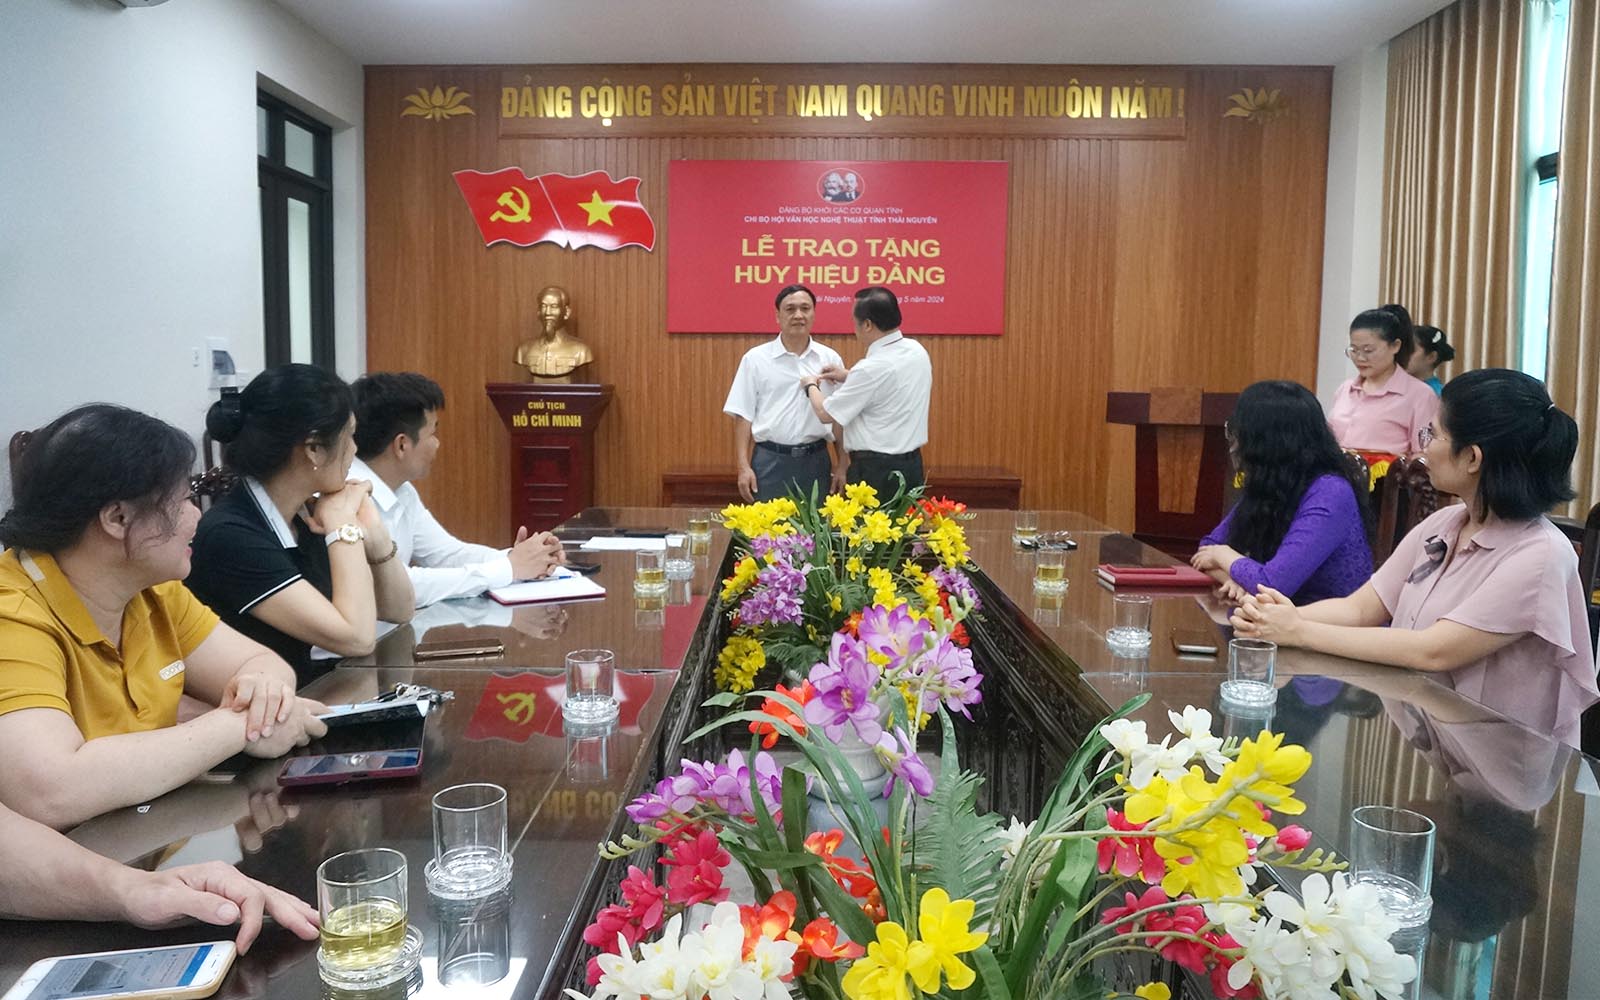 Đồng chí Hoàng Anh Trung, Tỉnh uỷ viên, Bí thư Đảng ủy Khối các cơ quan tỉnh trao Huy hiệu 30 năm tuổi Đảng cho đồng chí Trần Văn Thép